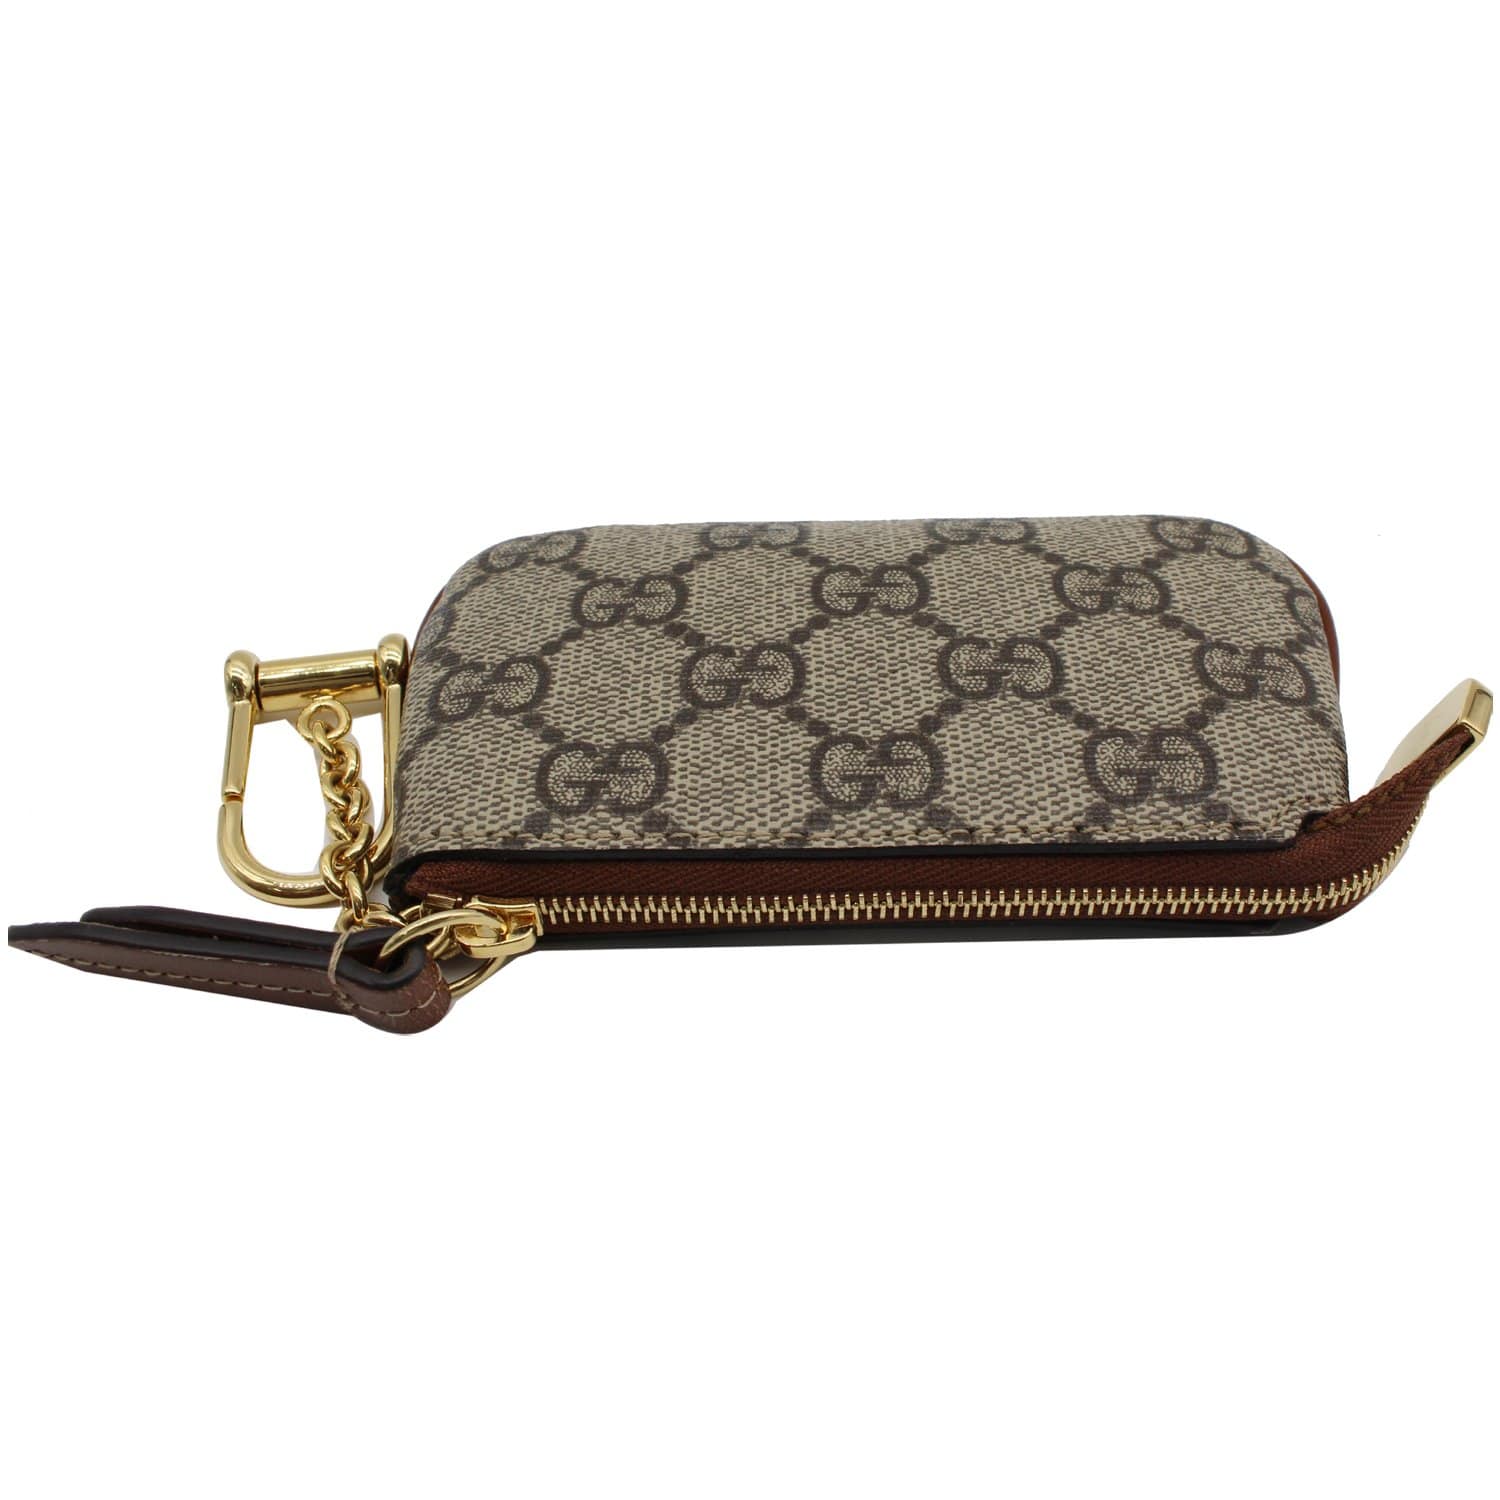 Gucci GG supreme key case VS. Louis Vuitton Key pouch